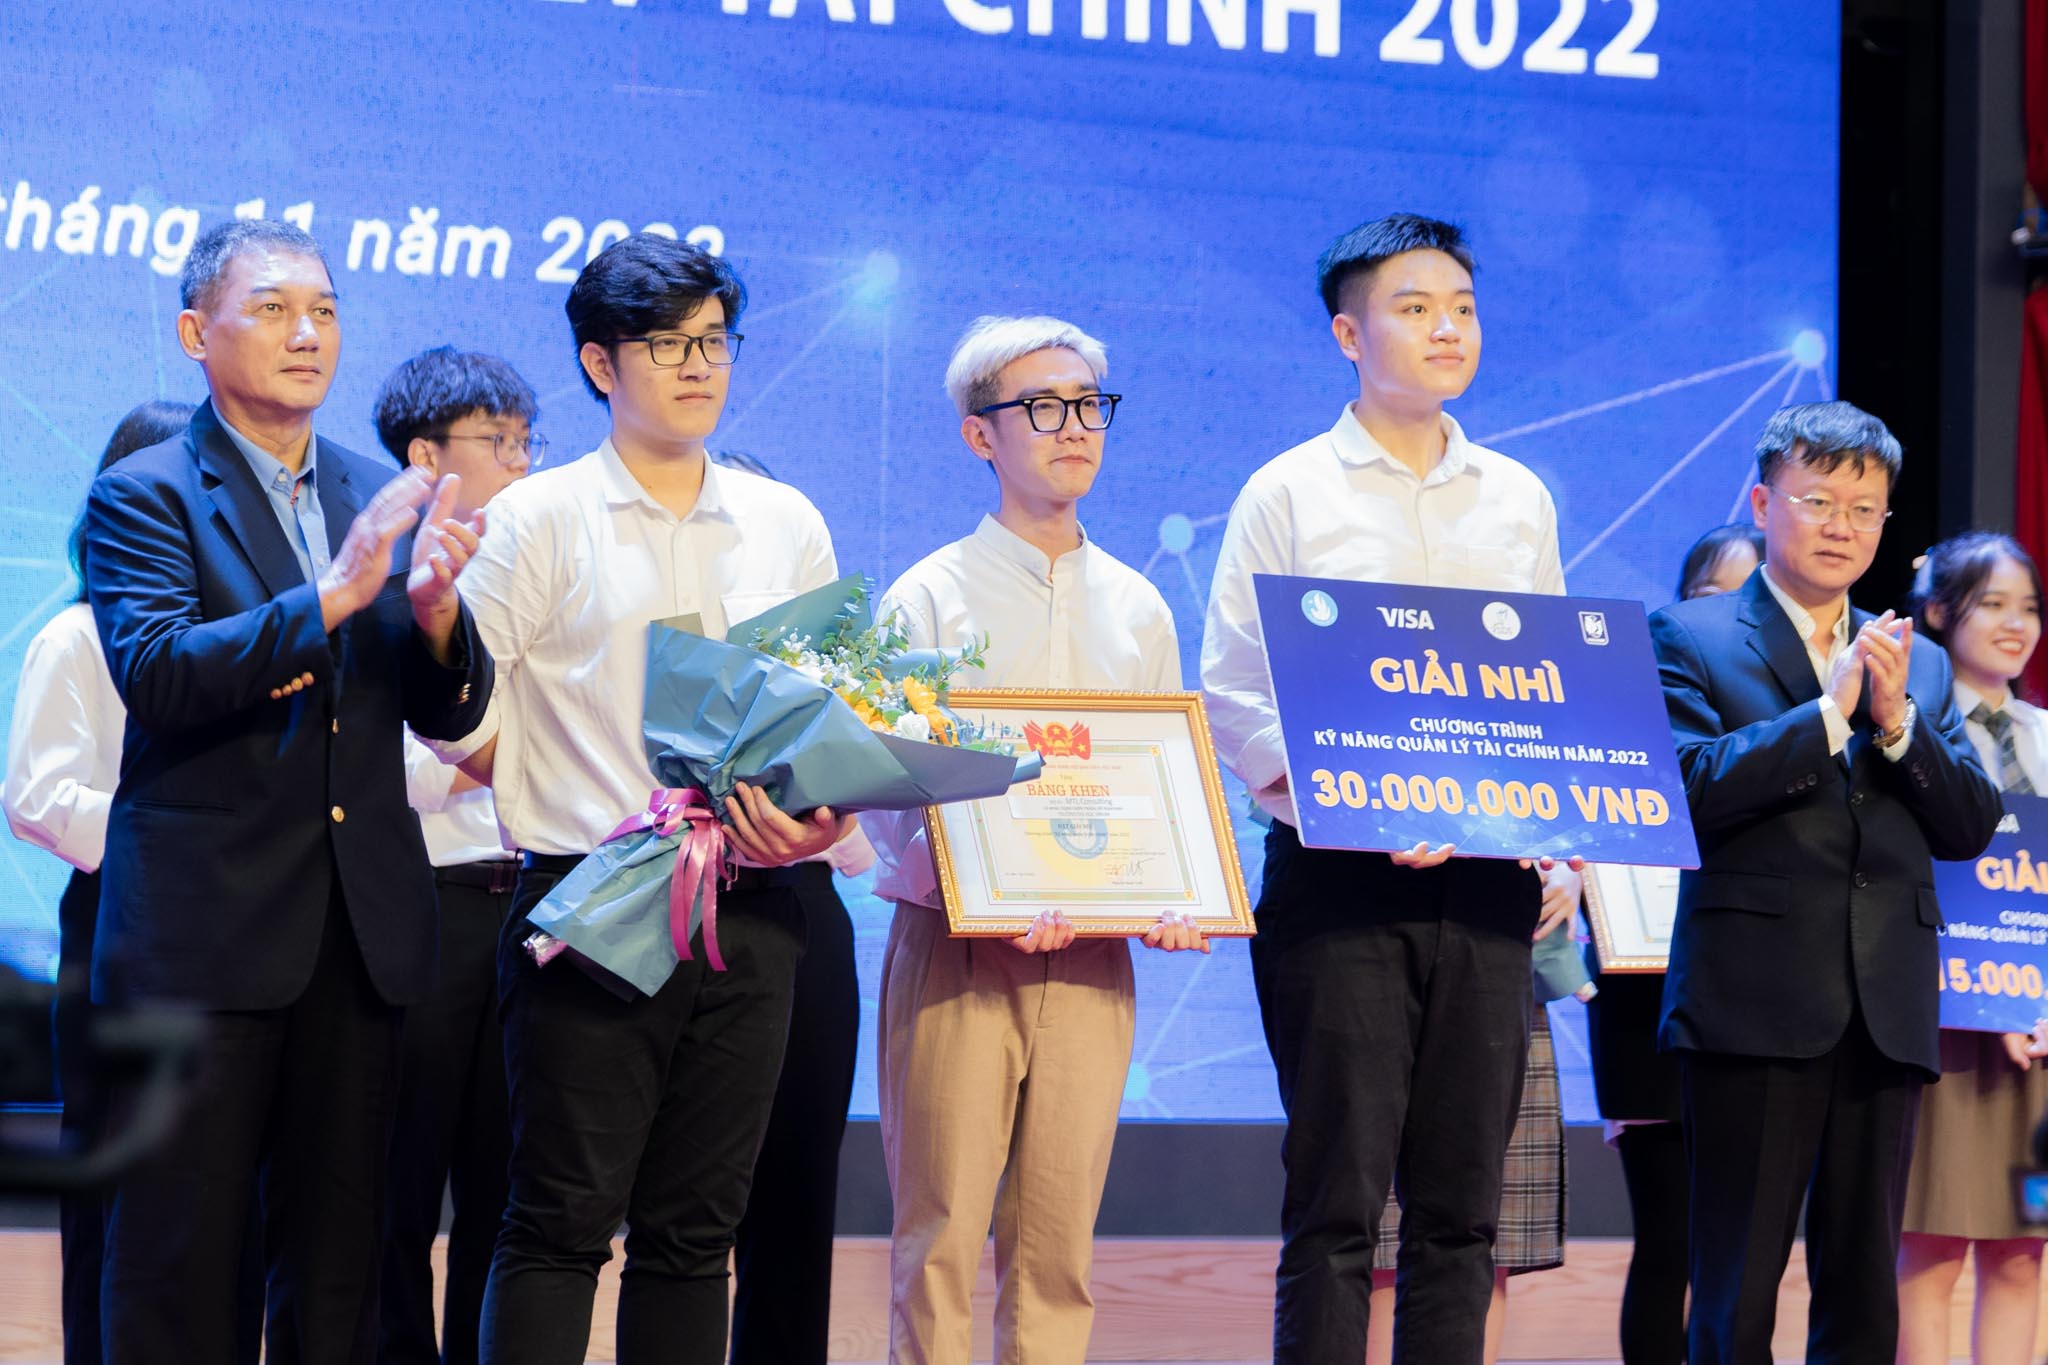 Trao giải Chương trình Kỹ năng Quản lý Tài chính do Visa và Trung ương Hội Sinh viên Việt Nam tổ chức